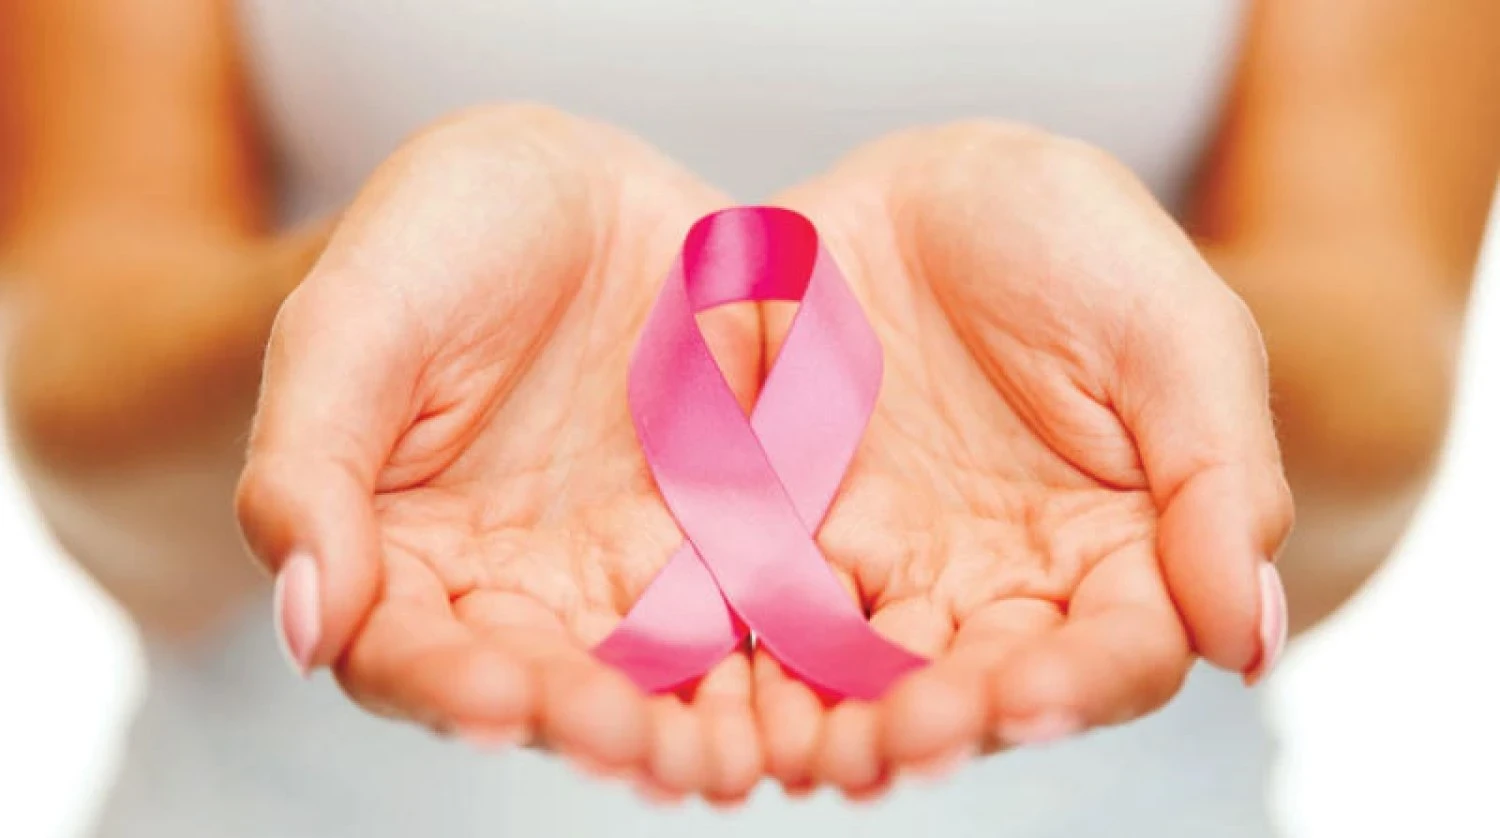 اكتشاف جينات جديدة مرتبطة بسرطان الثدي يمكن أن يساعد في تحديد النساء المعرضات لخطر الإصابة